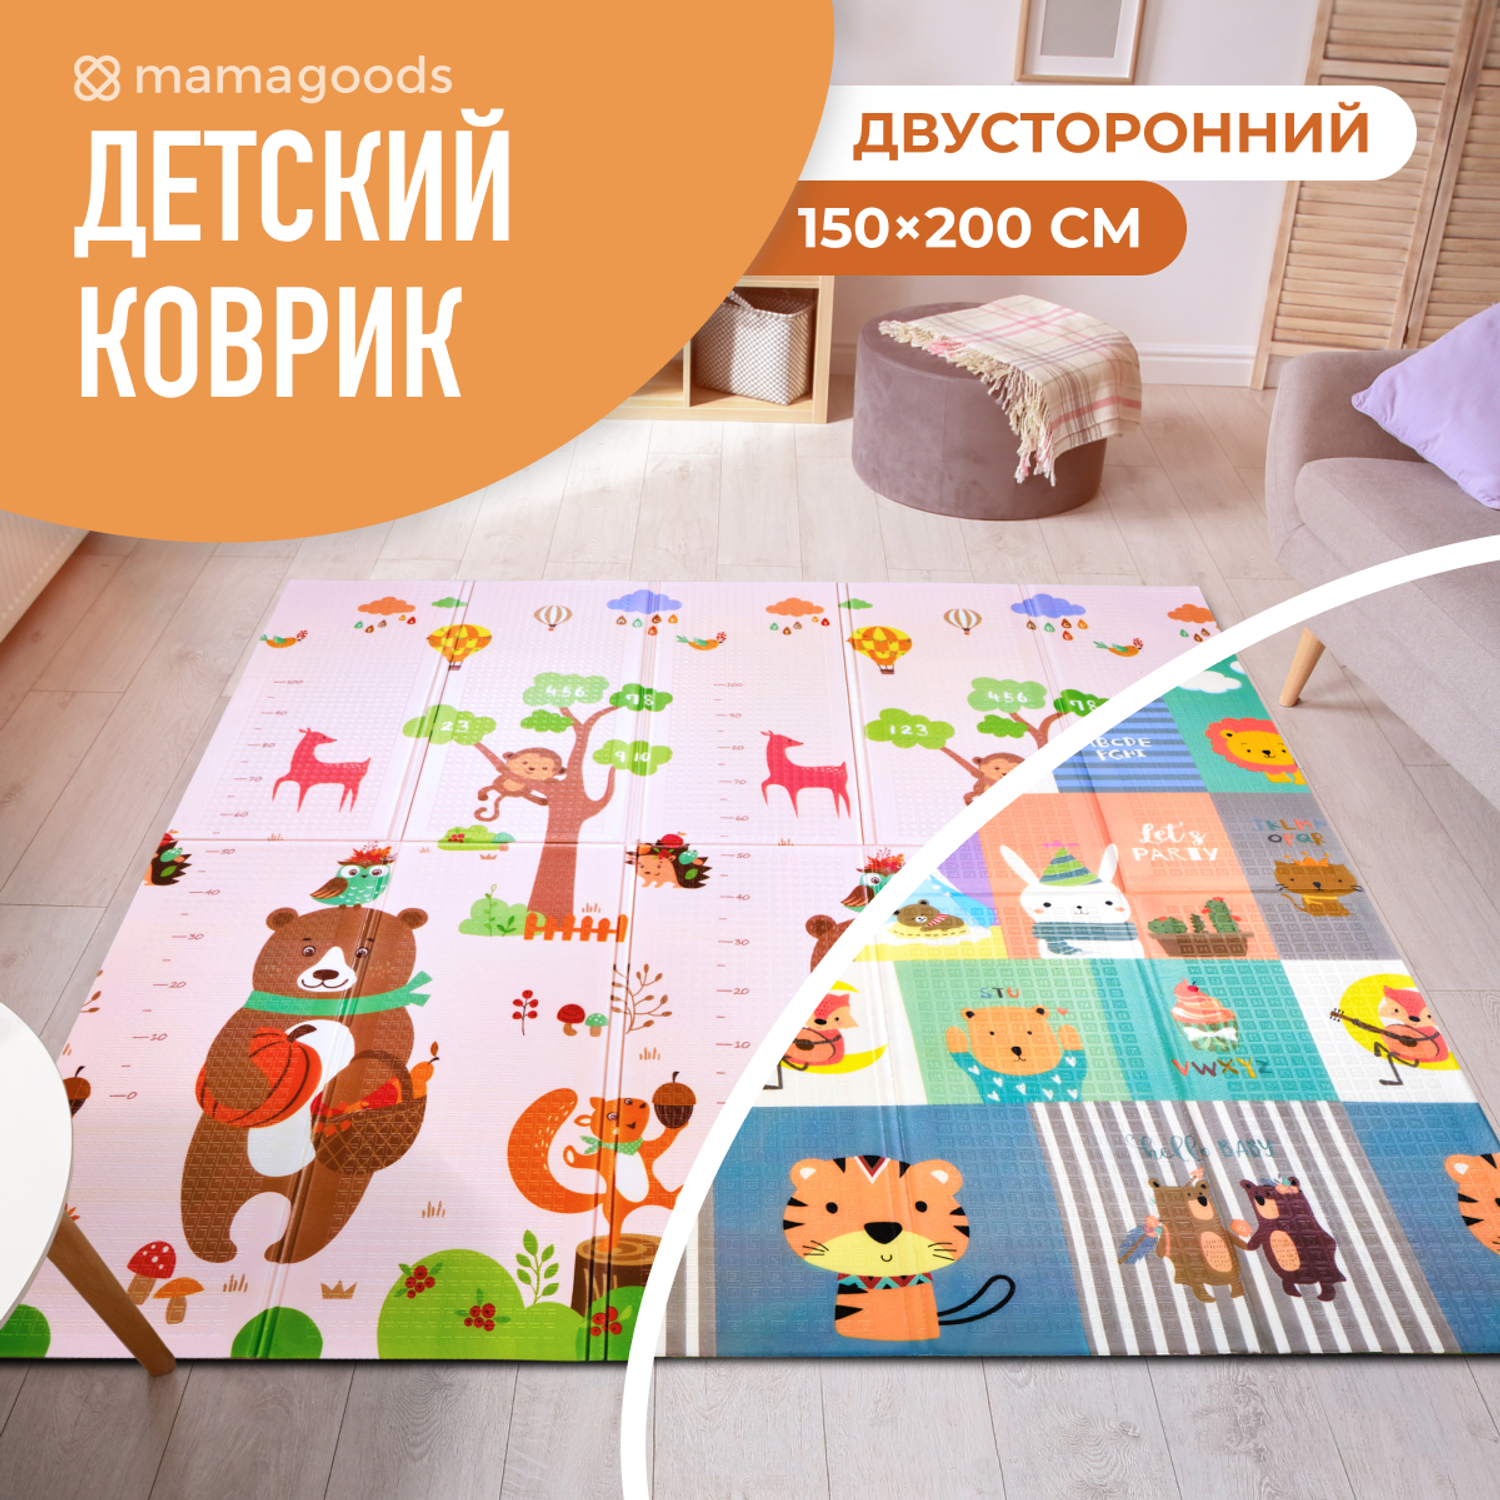 Развивающий коврик детский Mamagoods для ползания складной игровой 150х200 см Медведи и зверята - фото 1